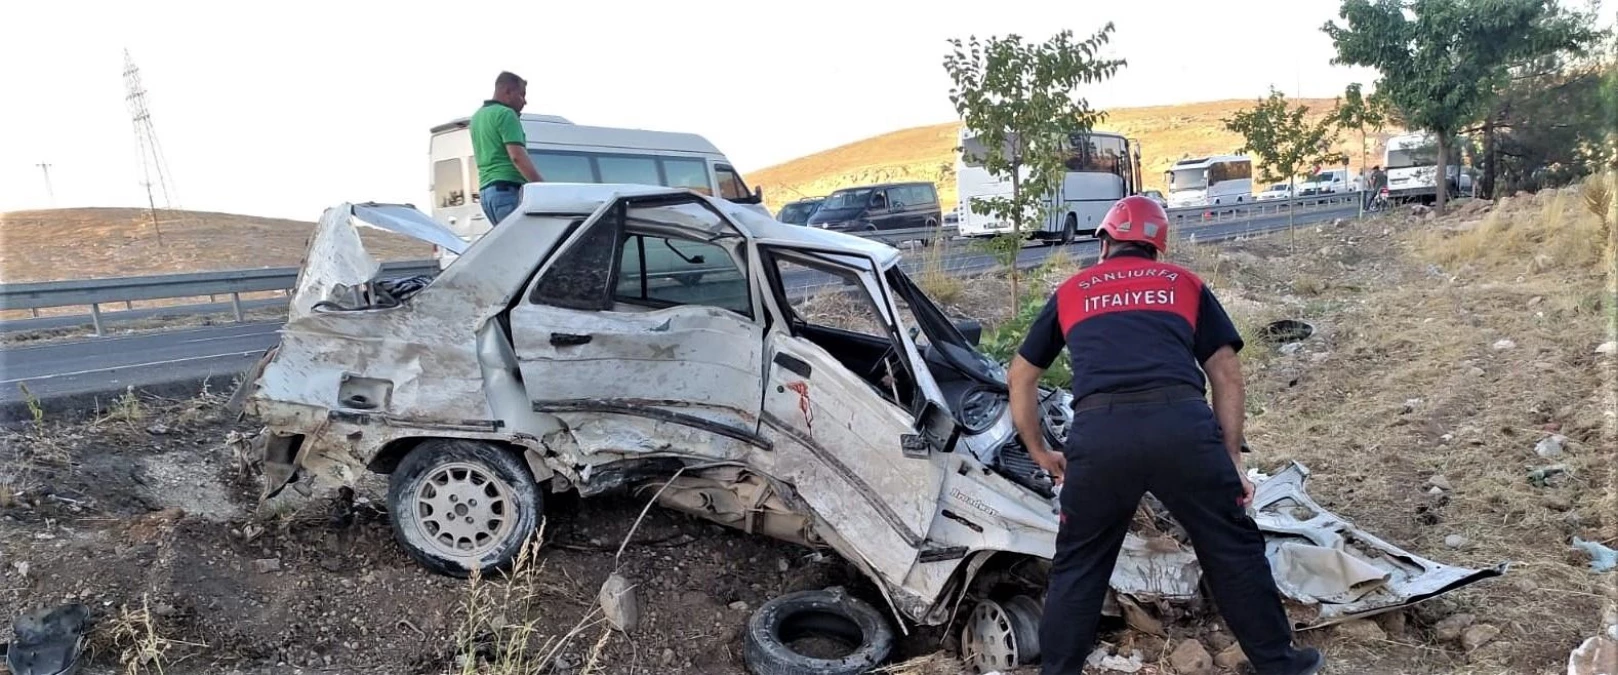 ŞANLIURFA - Otomobil ile minibüs çarpıştı: 2 yaralı